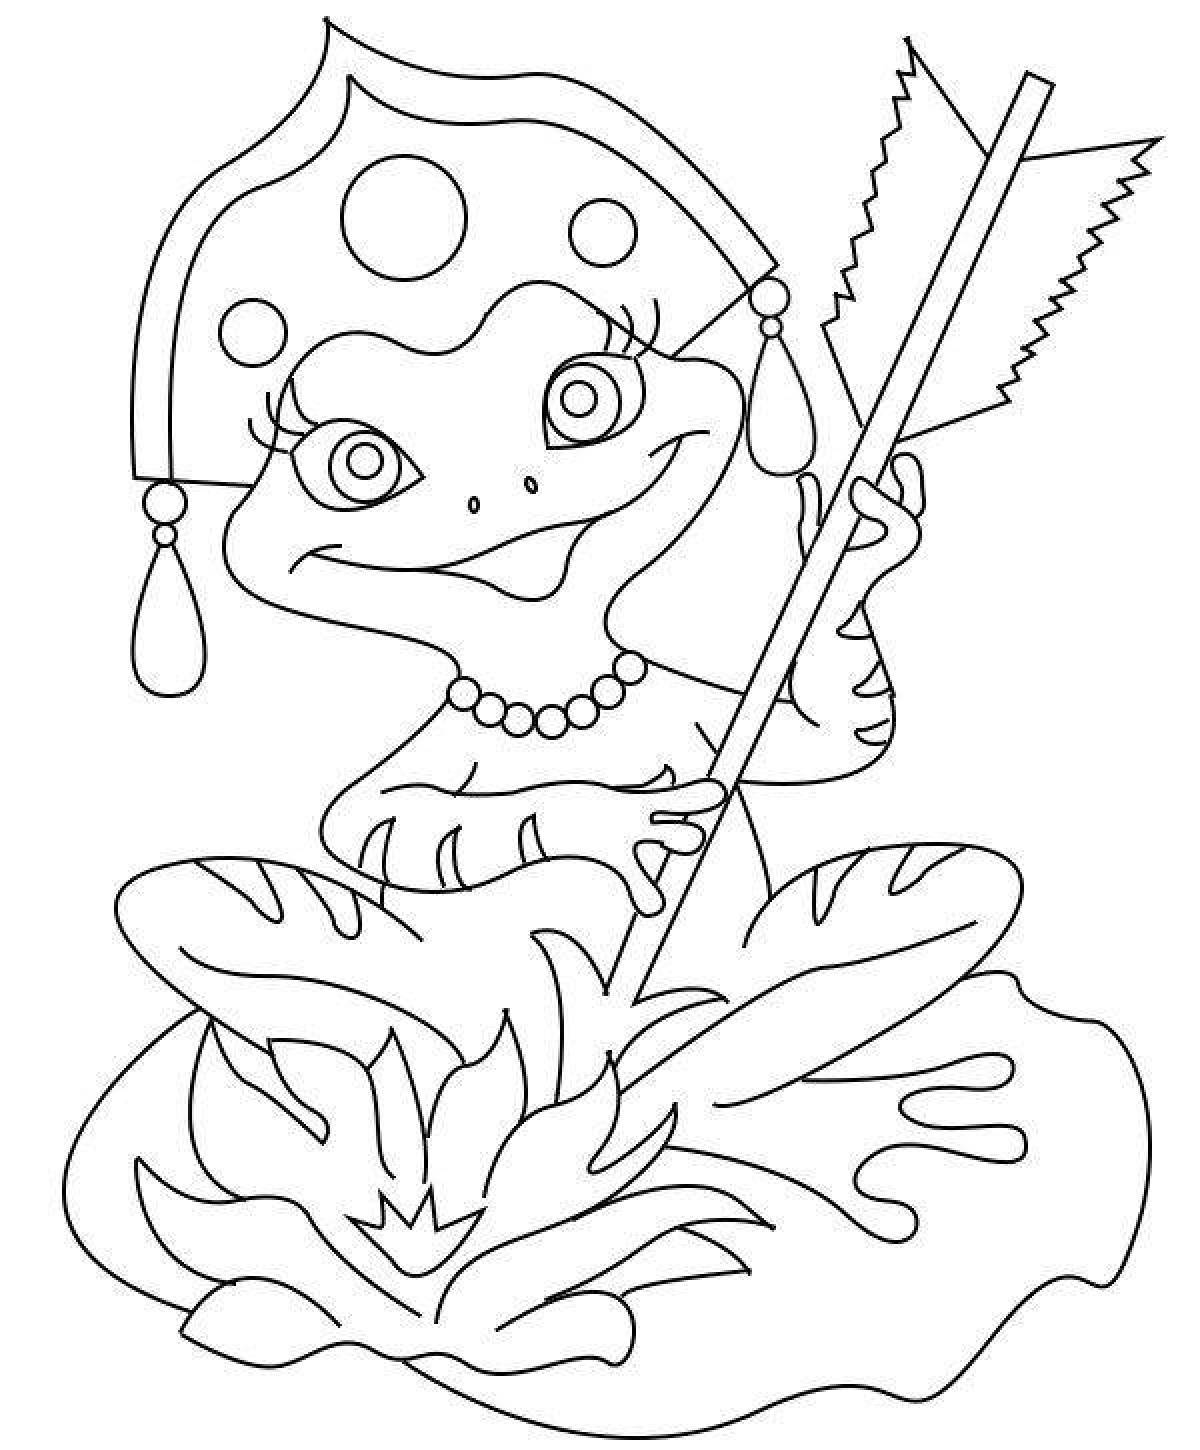 Смелая принцесса лягушка раскраска для детей